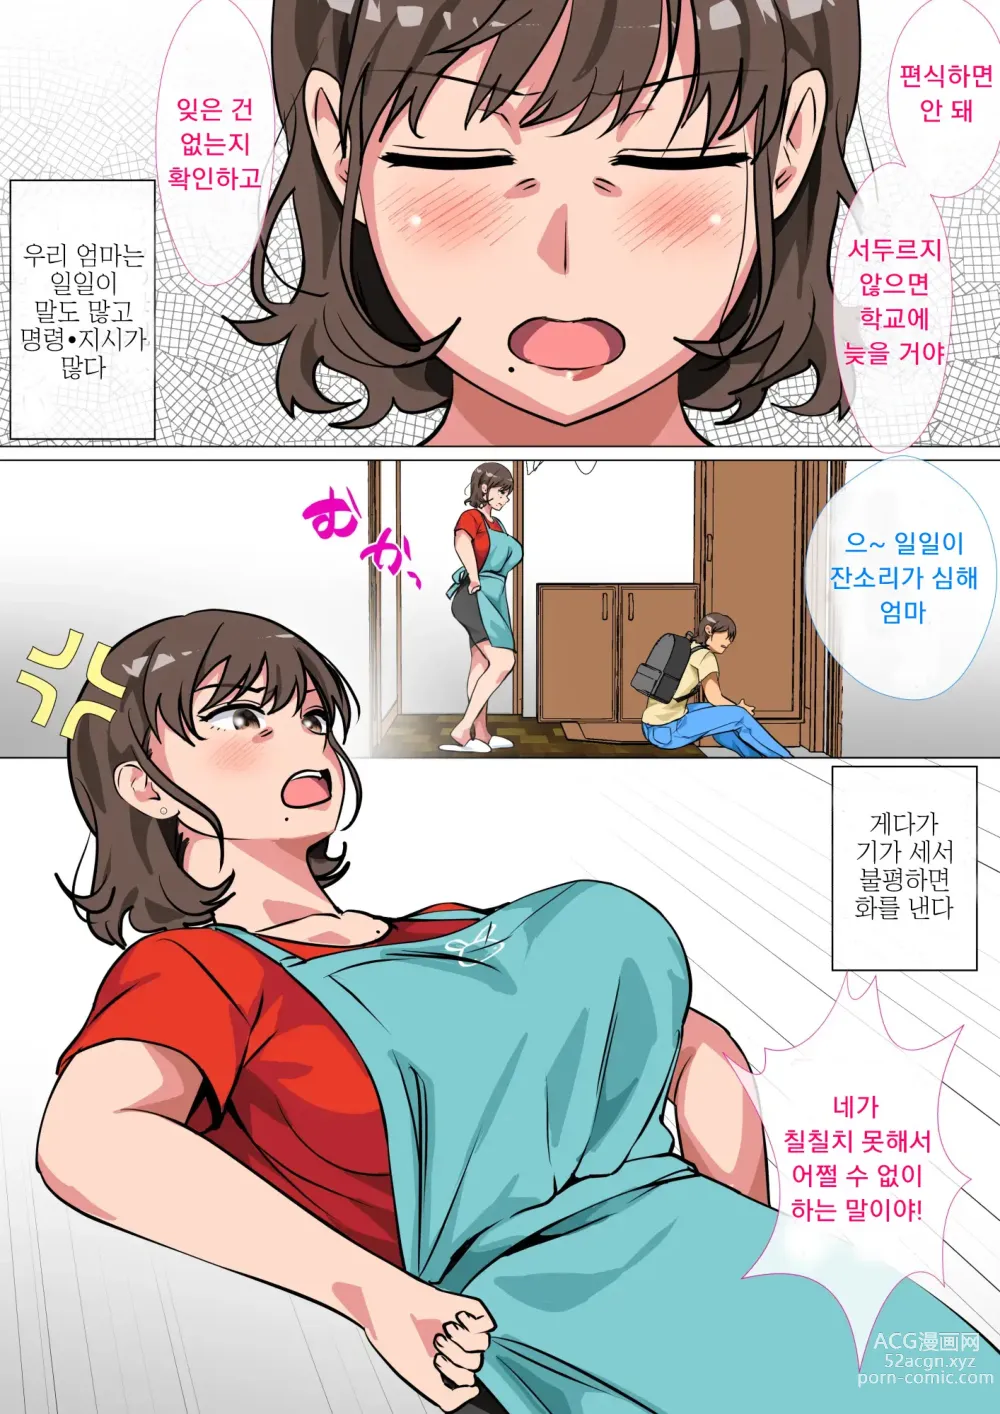 Page 3 of doujinshi 왕게임으로 명령해서 엄마랑 섹스한 이야기